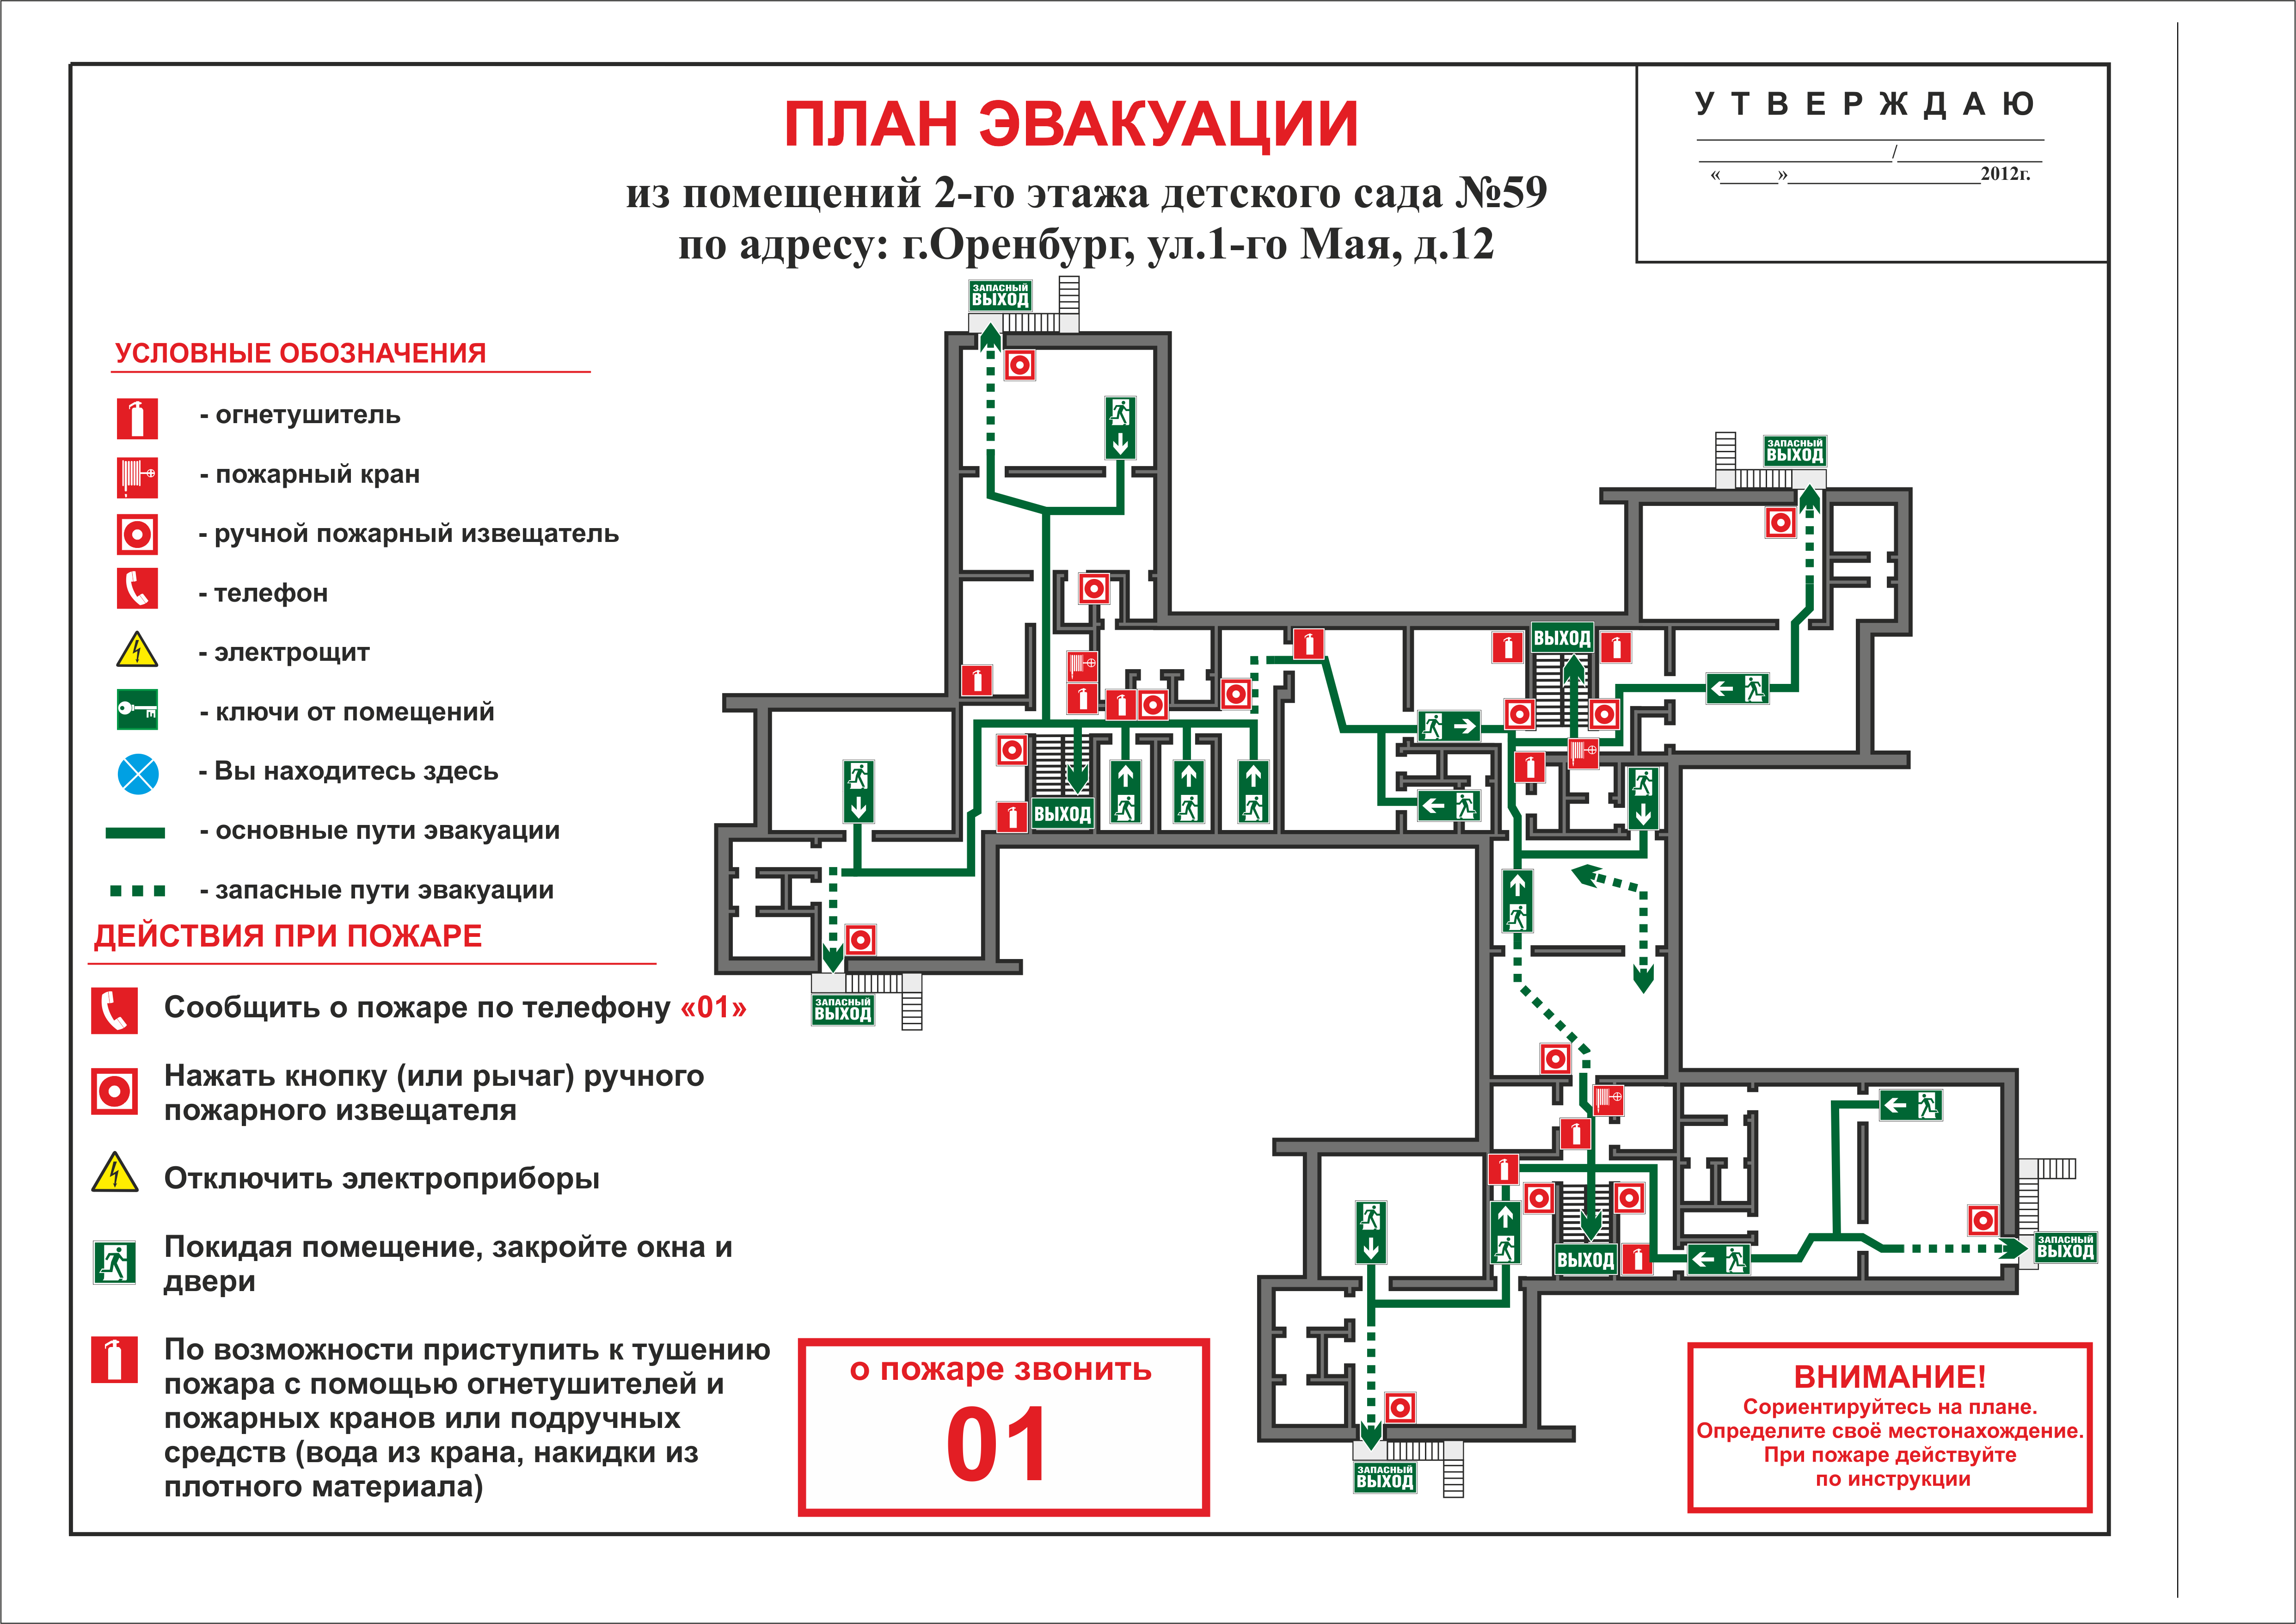 Картинки плана эвакуации с подробными инструкциями